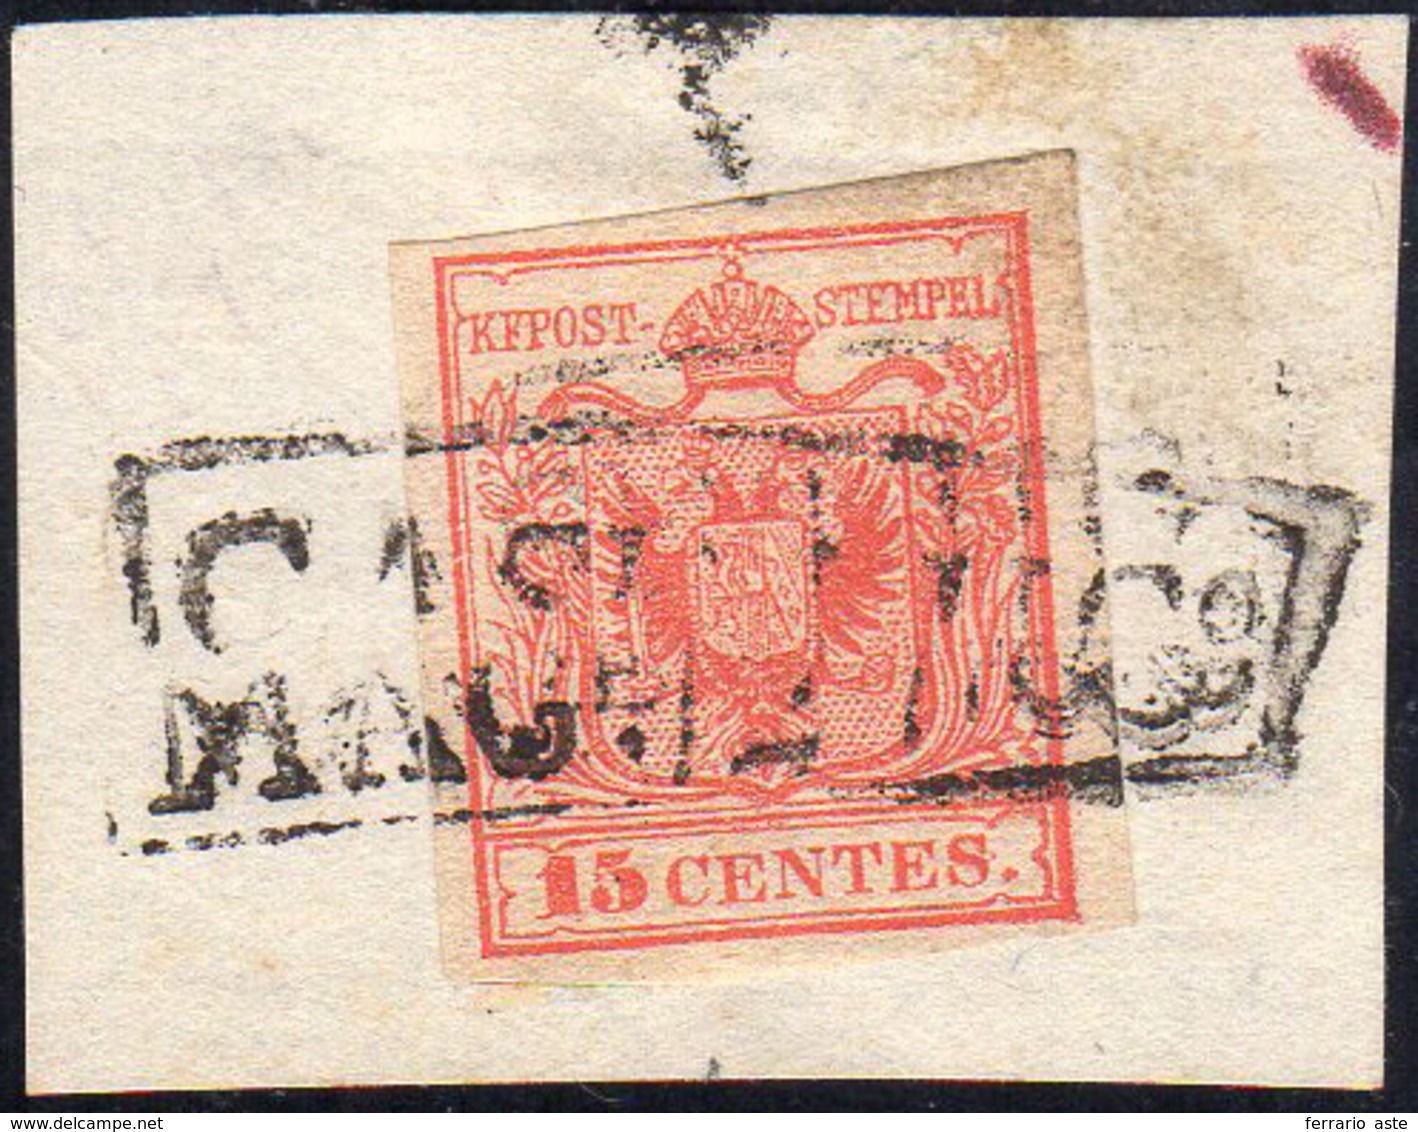 CASALMAGGIORE, Rd Punti R2 - 15 Cent. (3), Perfetto, Usato Su Piccolo Frammento Nel Luglio 1850. Ann... - Lombardy-Venetia